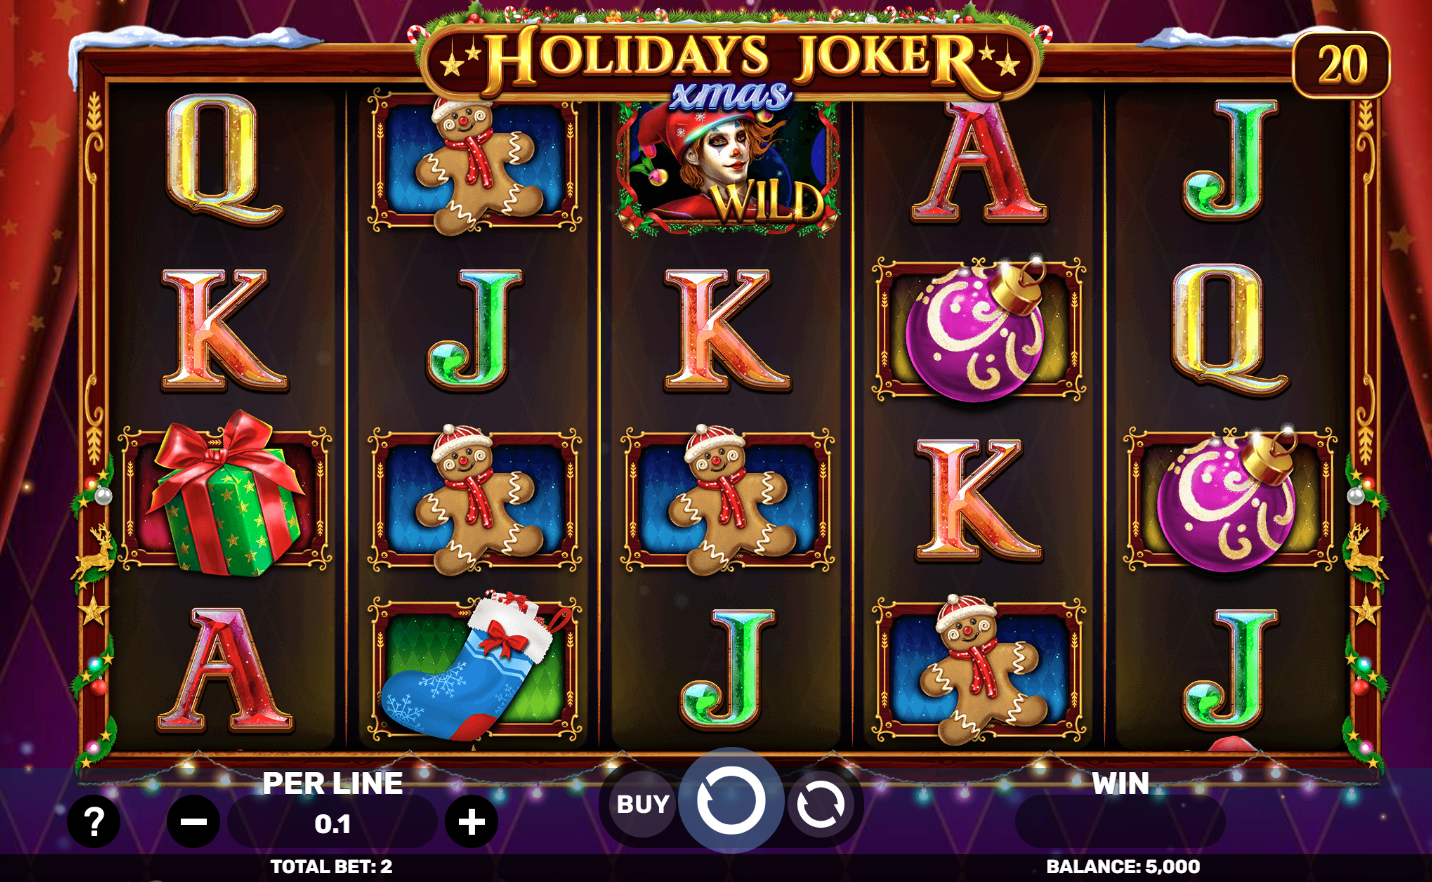 spinomenal-share-festive-joy-with-holidays-joker-xmas-slot